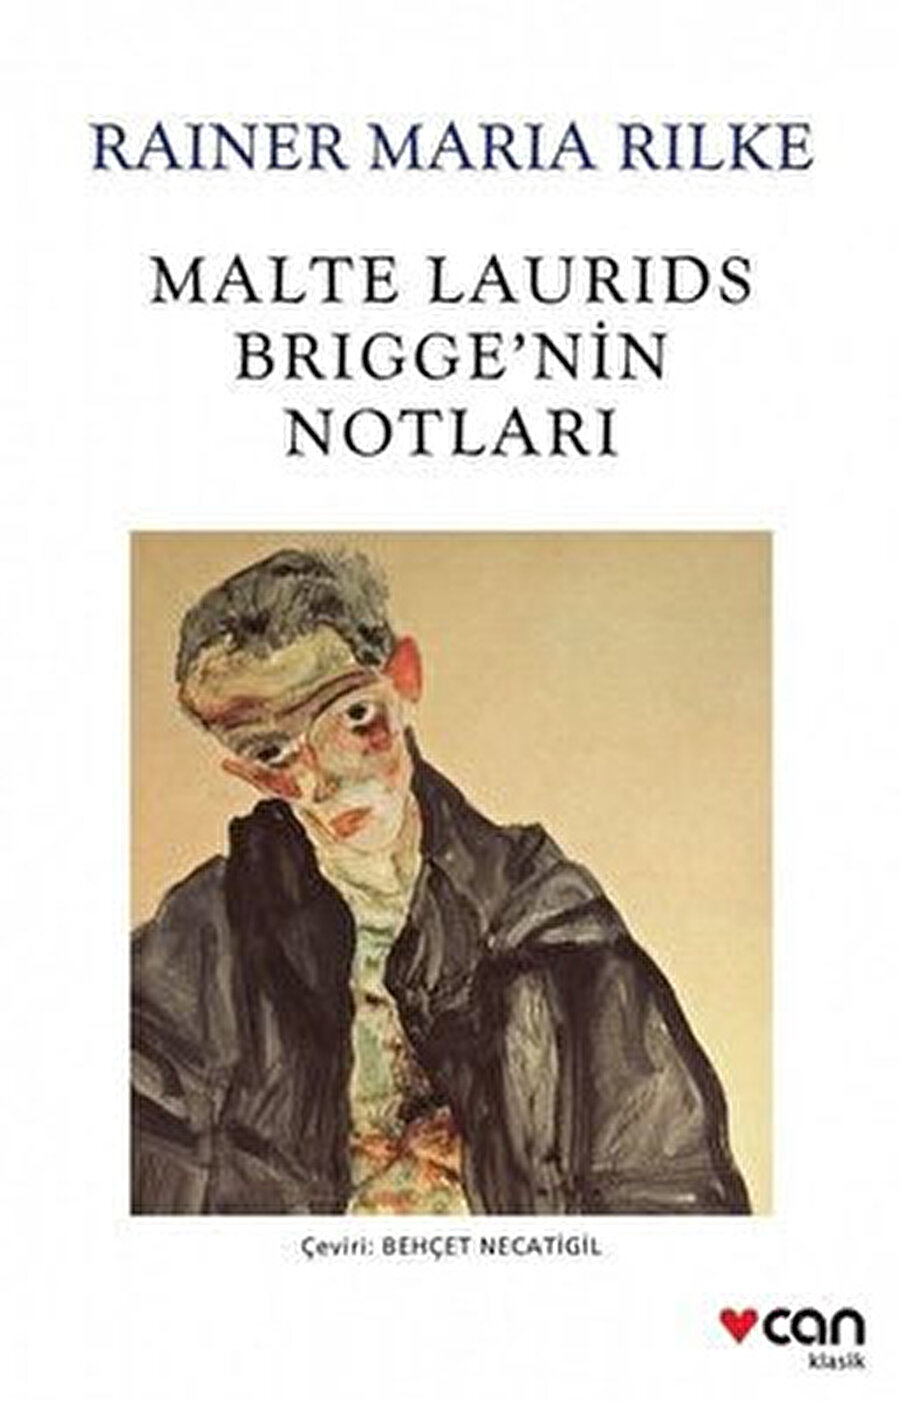 Rainer Maria Rilke, Malte Laurids Brigge’nin Notları’nda şair Felix Arvers’in ölüm döşeğini hatırlatır bize.